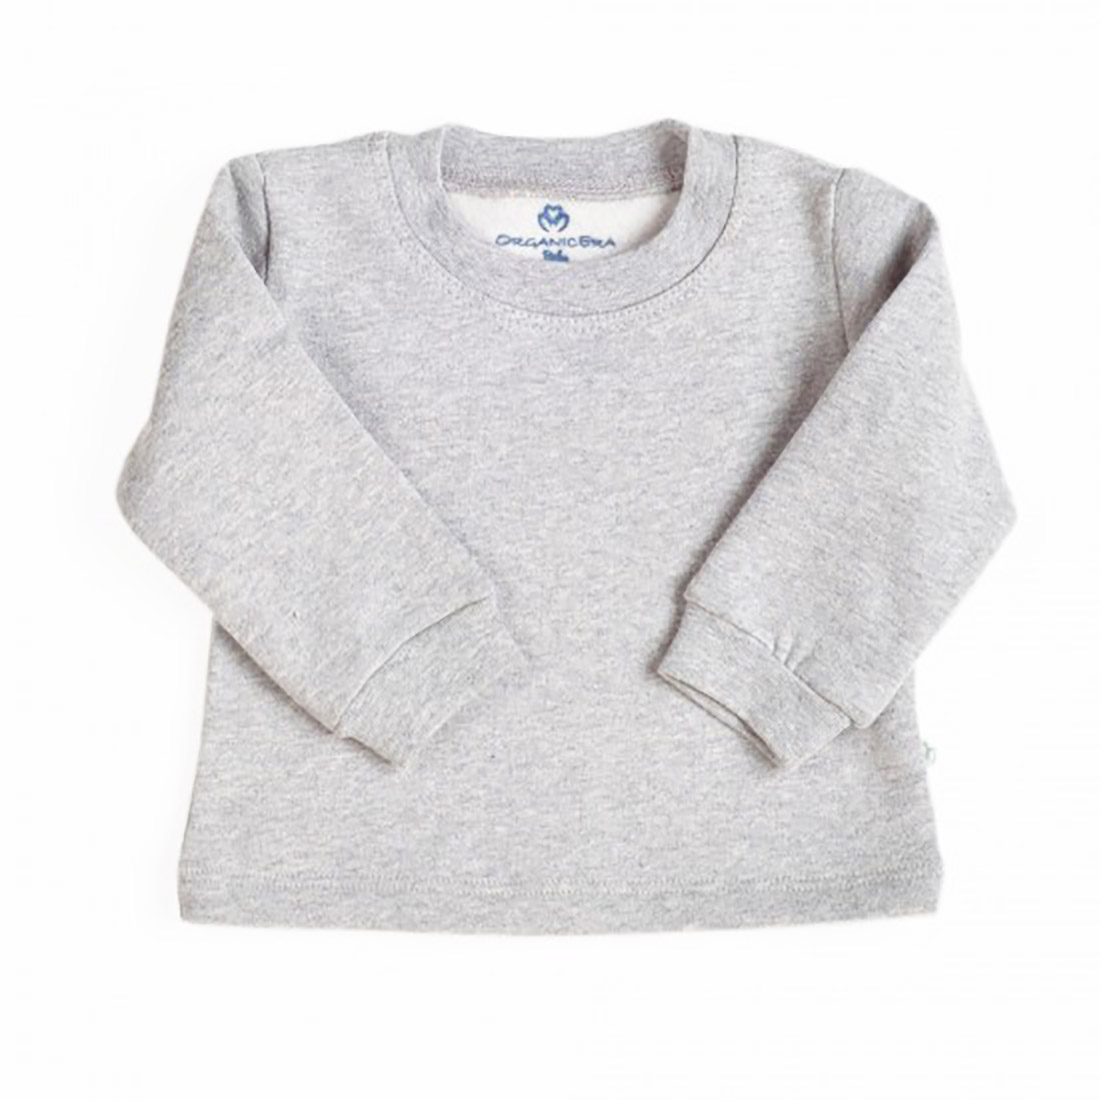 OrganicEra Organic Sweatshirt, Grey Melange